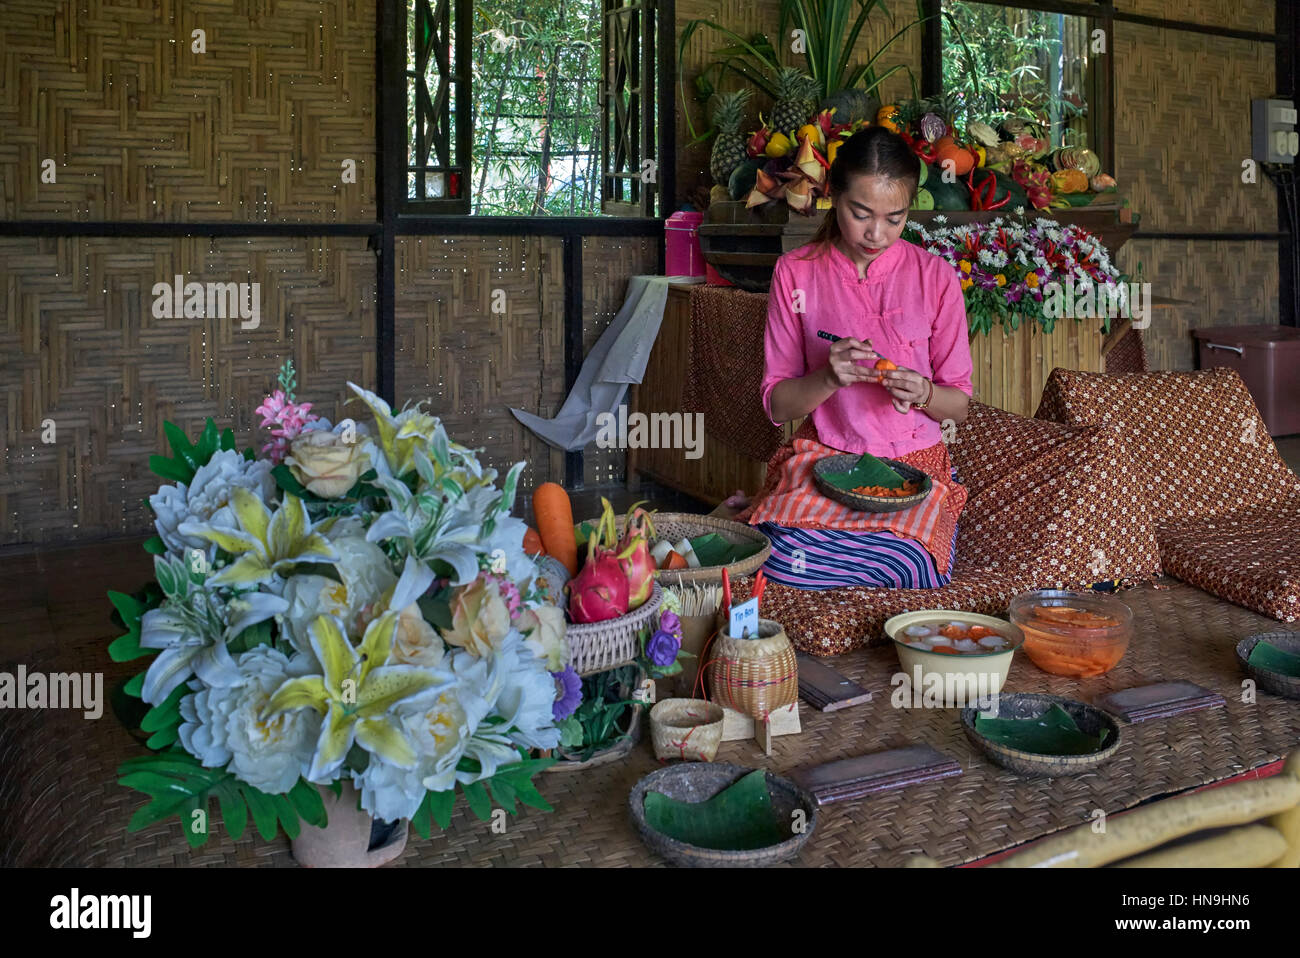 Cucina d'arte e cultura tailandese in stile artigiano. Thailandia. Persone Sud-Est asiatico Foto Stock